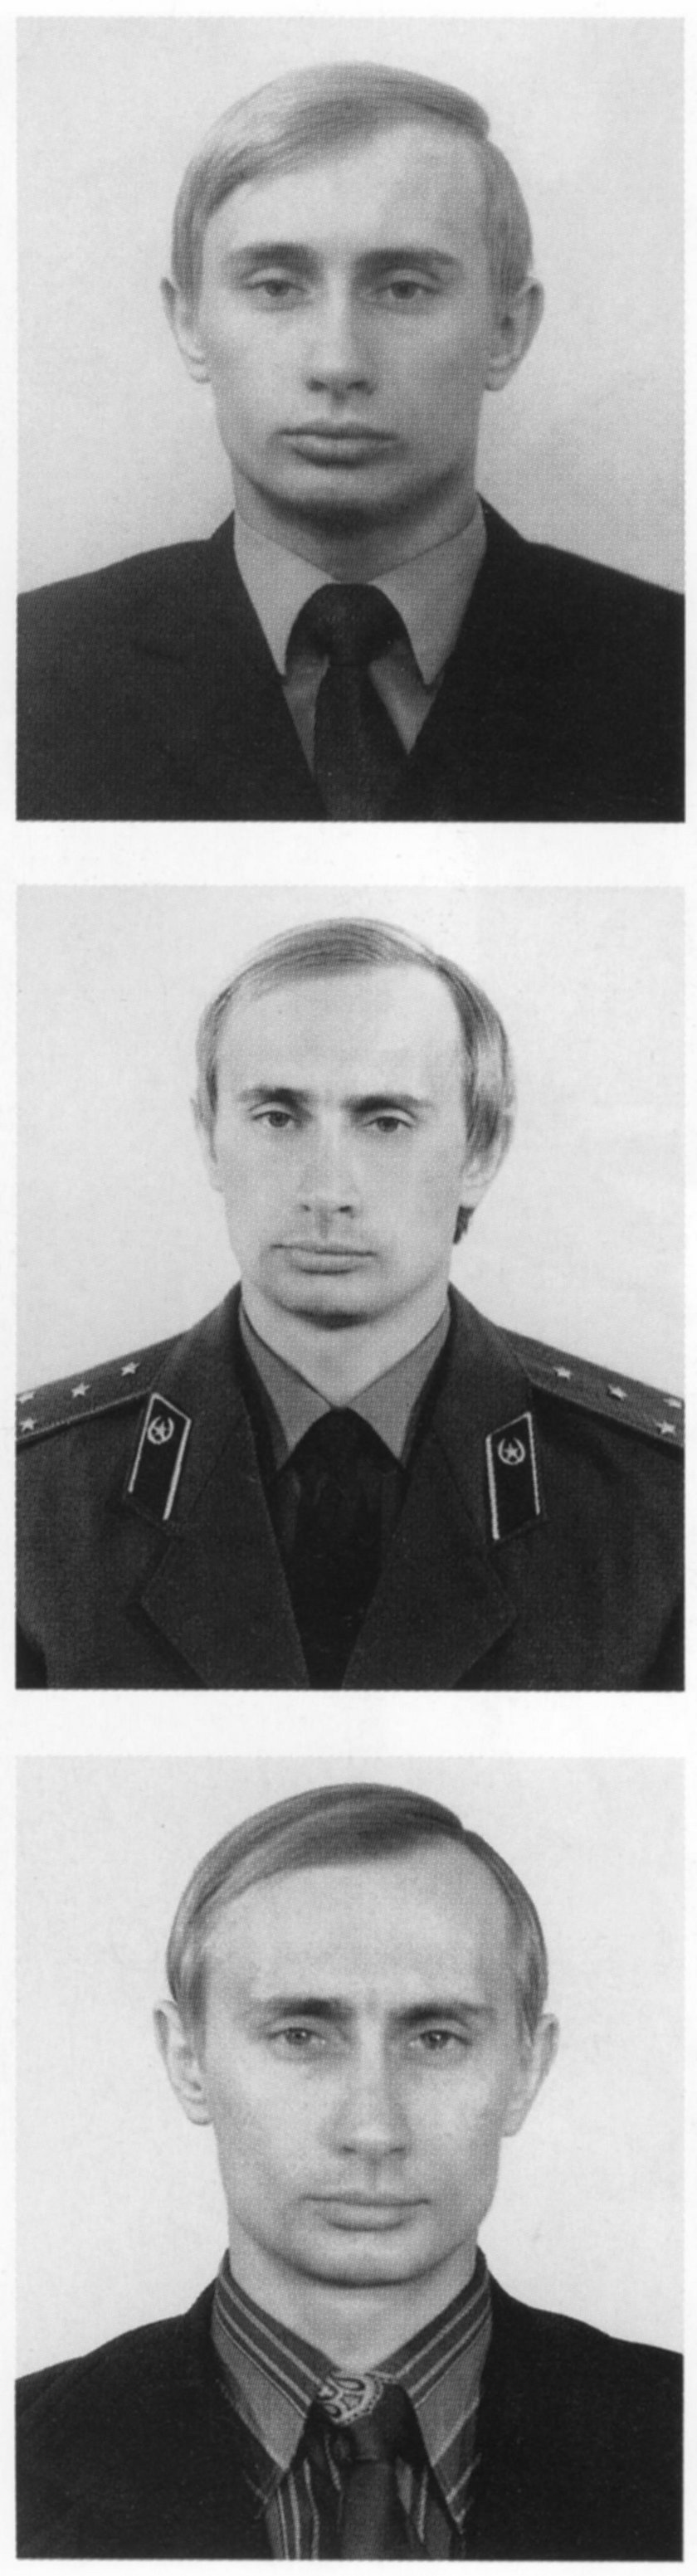 Odnaleziono legitymację Stasi należącą do Władimira Putina